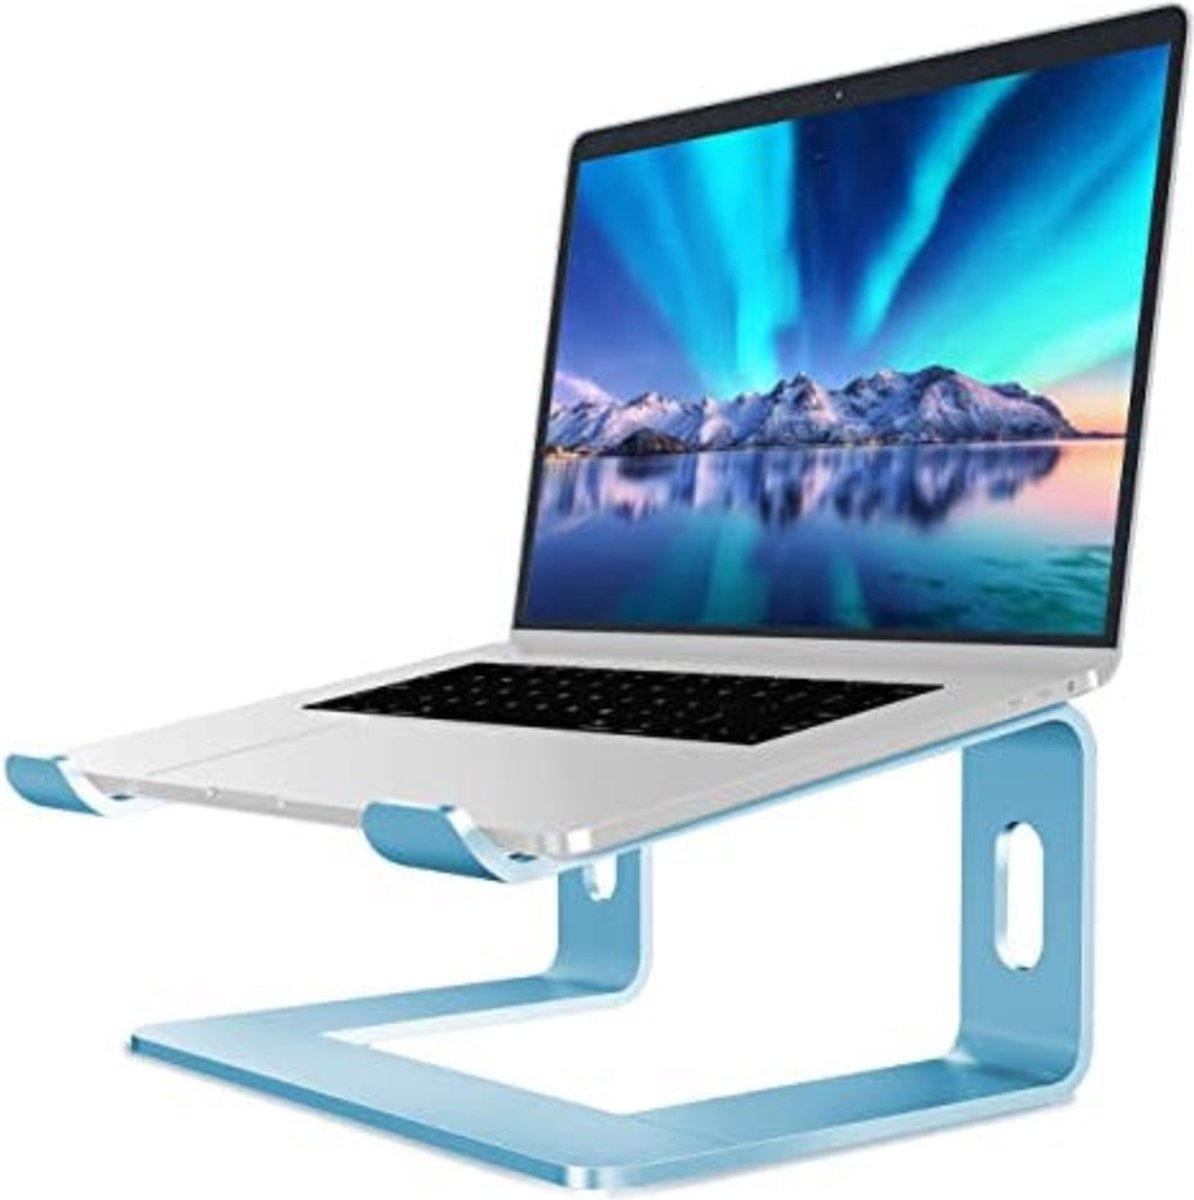 SFT Products Luxe Laptopstandaard van Aluminium Blauw - Zwarte Laptophouder - Verhoogde Notebook Standaard - Ergonomische Laptophouder - Blauwe Laptopstandaard van Aluminium